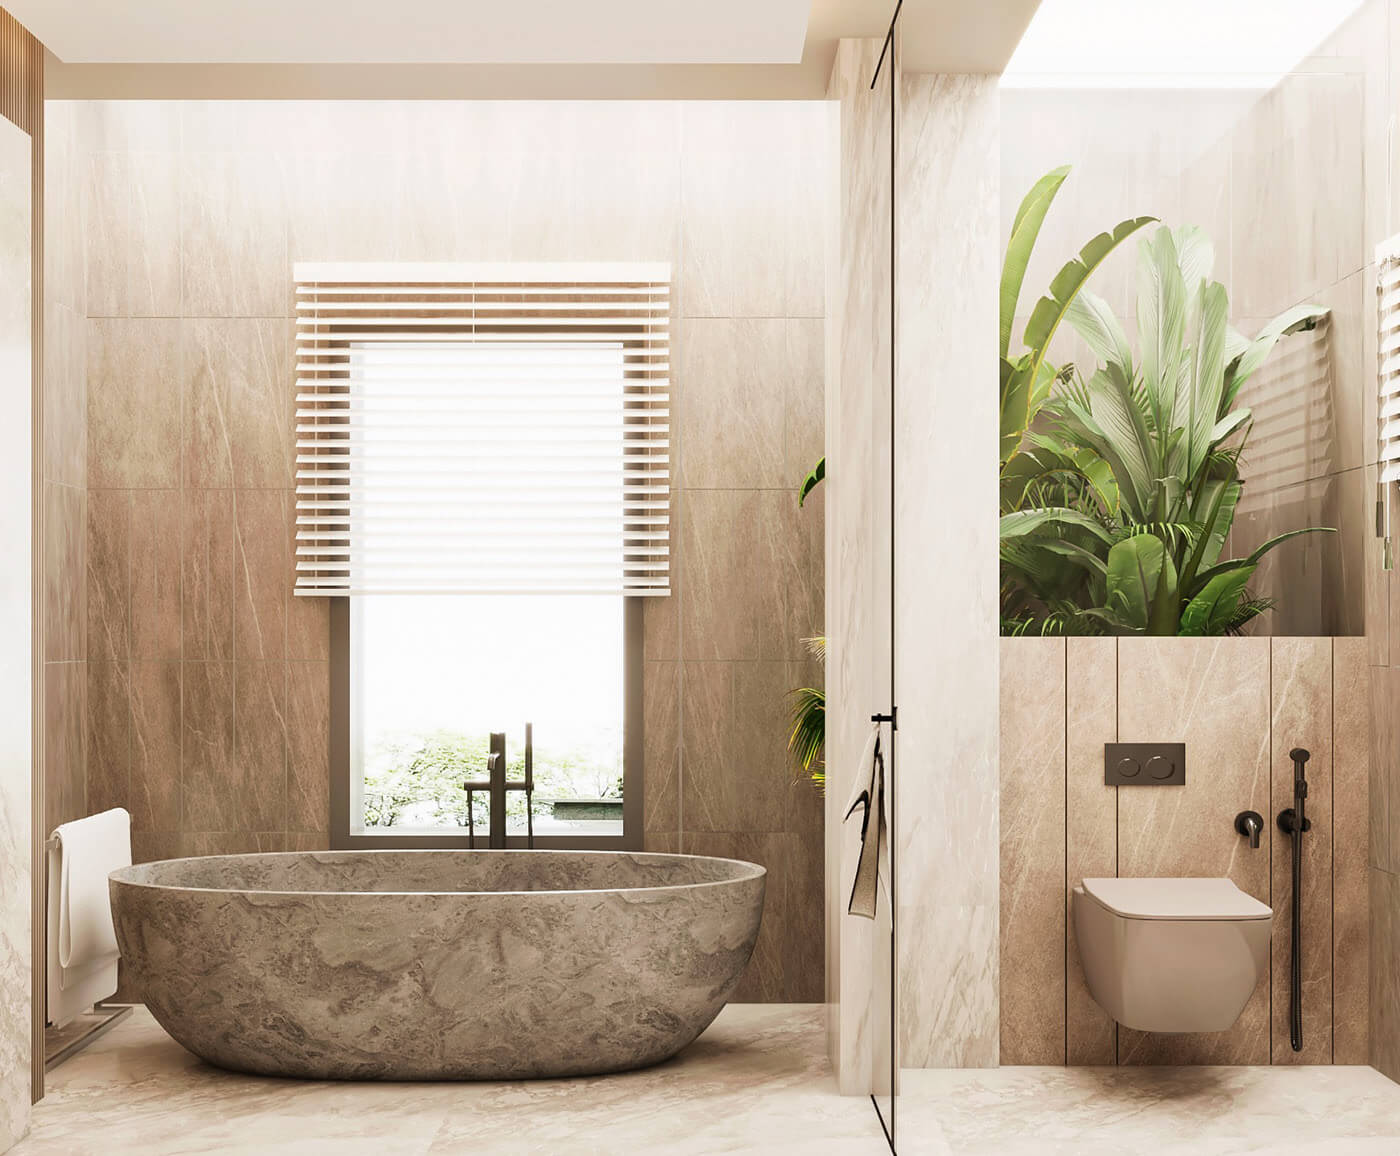 Với thiết kế nhà tắm có bồn tắm sang trọng, bạn sẽ cảm nhận được sự xa hoa và sang trọng từ ngôi nhà của mình. Màu sắc và chất liệu được kết hợp một cách hoàn hảo, tạo nên không gian vô cùng đẳng cấp và tinh tế. Hãy cùng chiêm ngưỡng những hình ảnh đẹp và lý tưởng này.